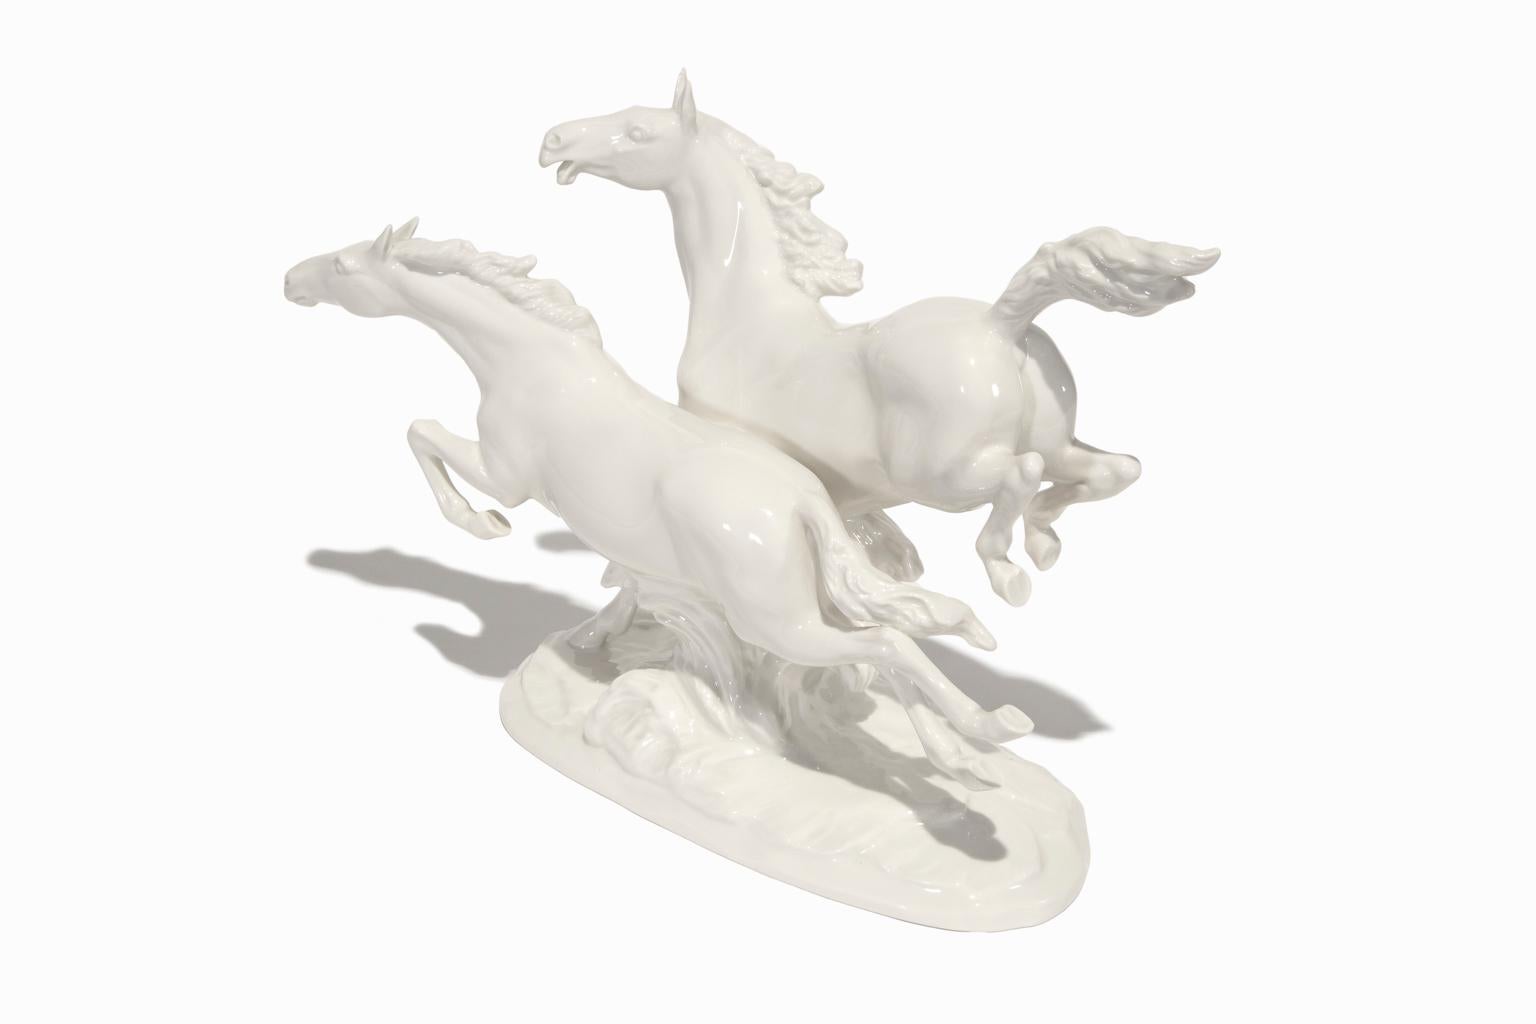 Diese wunderschöne Porzellanplastik von Hutschenreuther Porzellan zeigt zwei galoppierende Pferde, die vom Bildhauer Max Hermann Fritz detailgetreu ausgearbeitet und signiert wurden. Max Hermann Fritz, oder MH Fritz, wurde 1873 in Neuhaus geboren